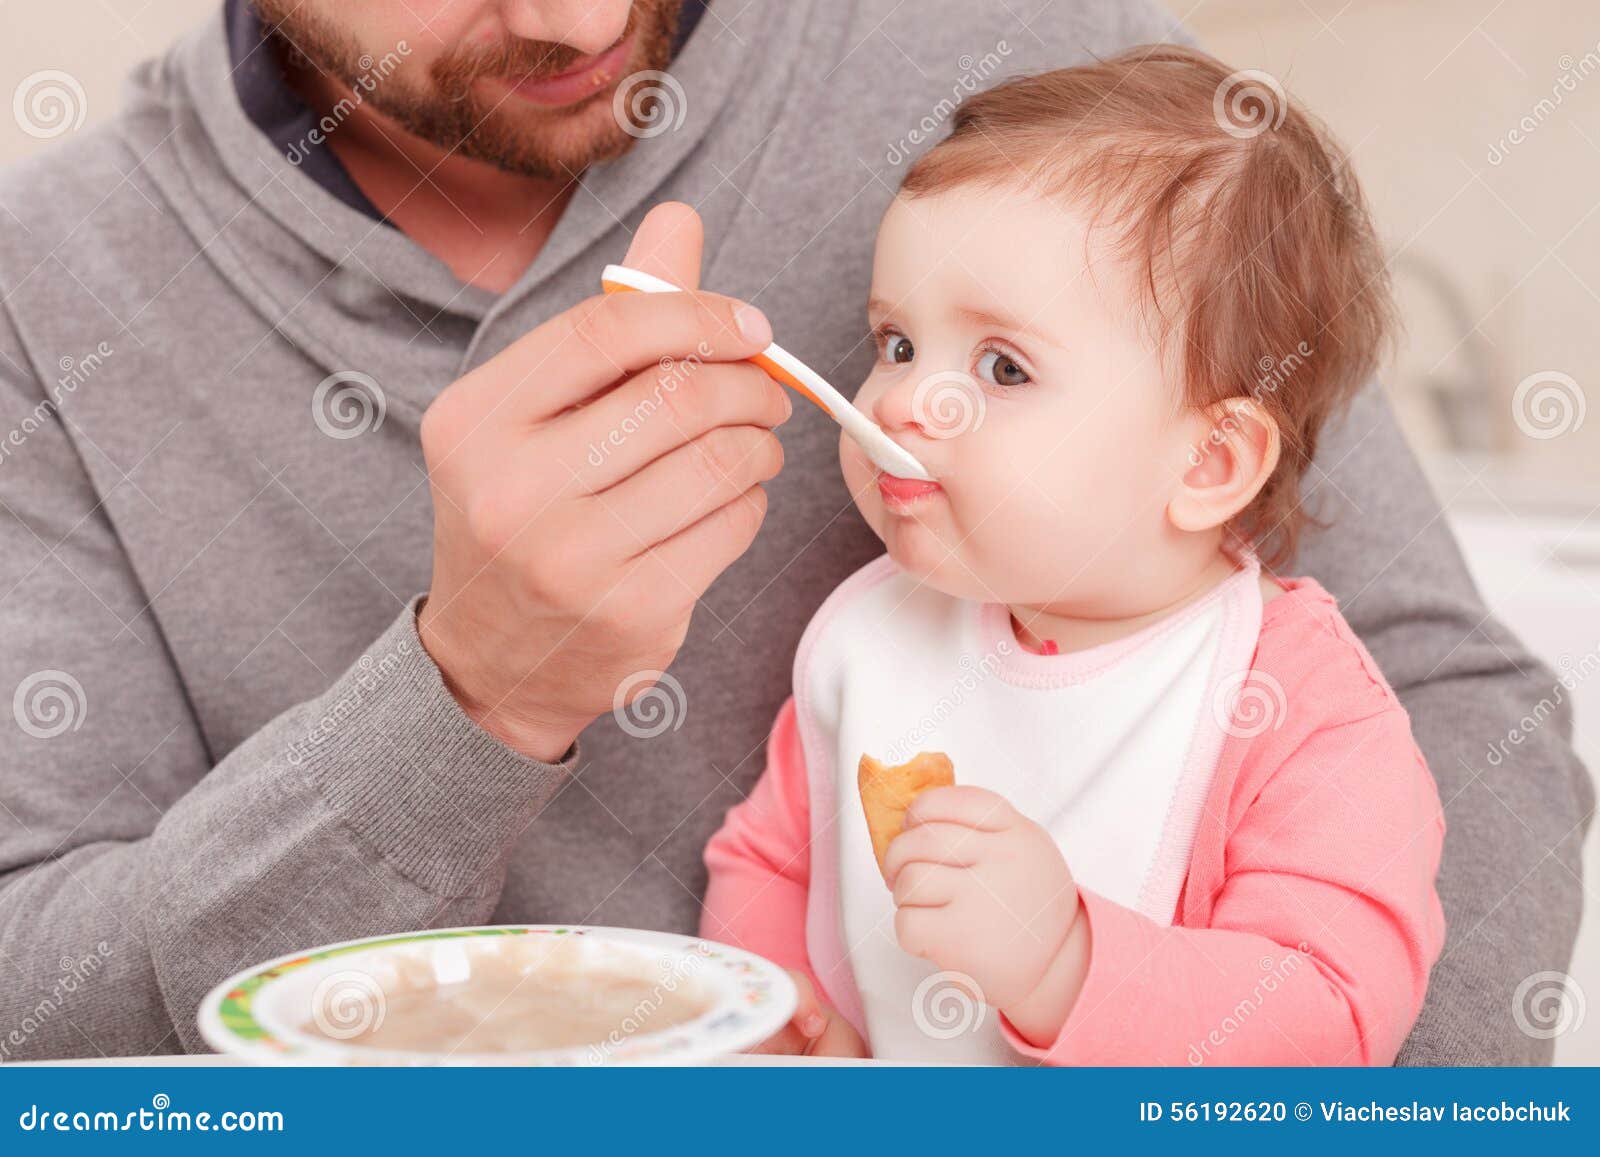 Папа кормит маму. Ложечка для кормления. Малыш кушает. Кормление ребенка с ложечки. Ложка для кормления ребенка.